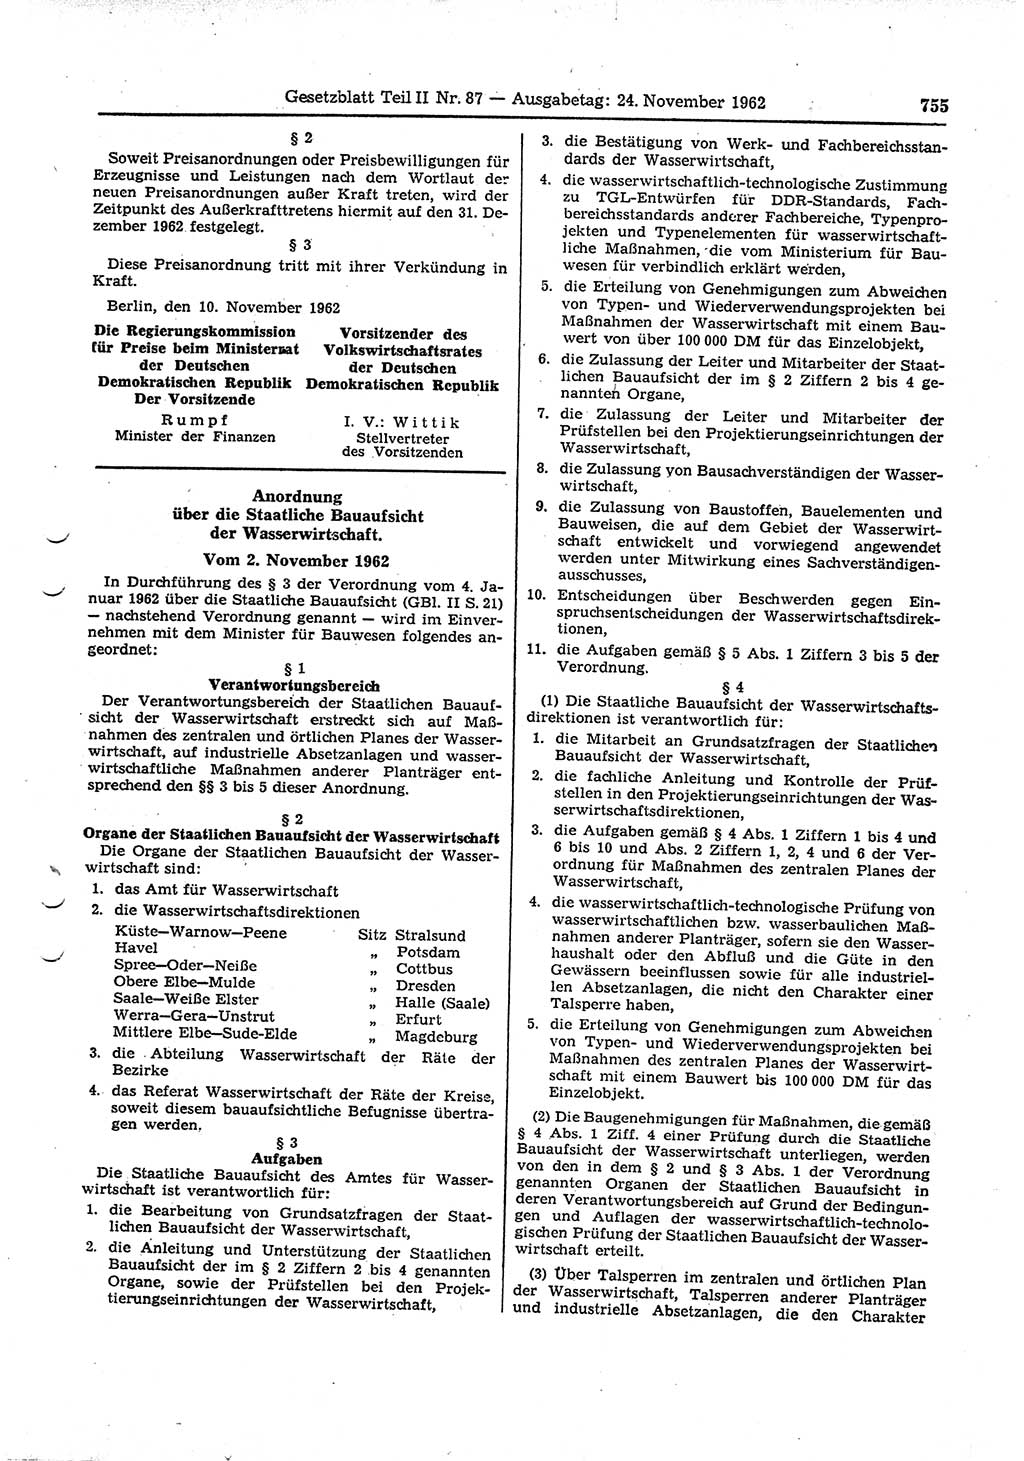 Gesetzblatt (GBl.) der Deutschen Demokratischen Republik (DDR) Teil ⅠⅠ 1962, Seite 755 (GBl. DDR ⅠⅠ 1962, S. 755)